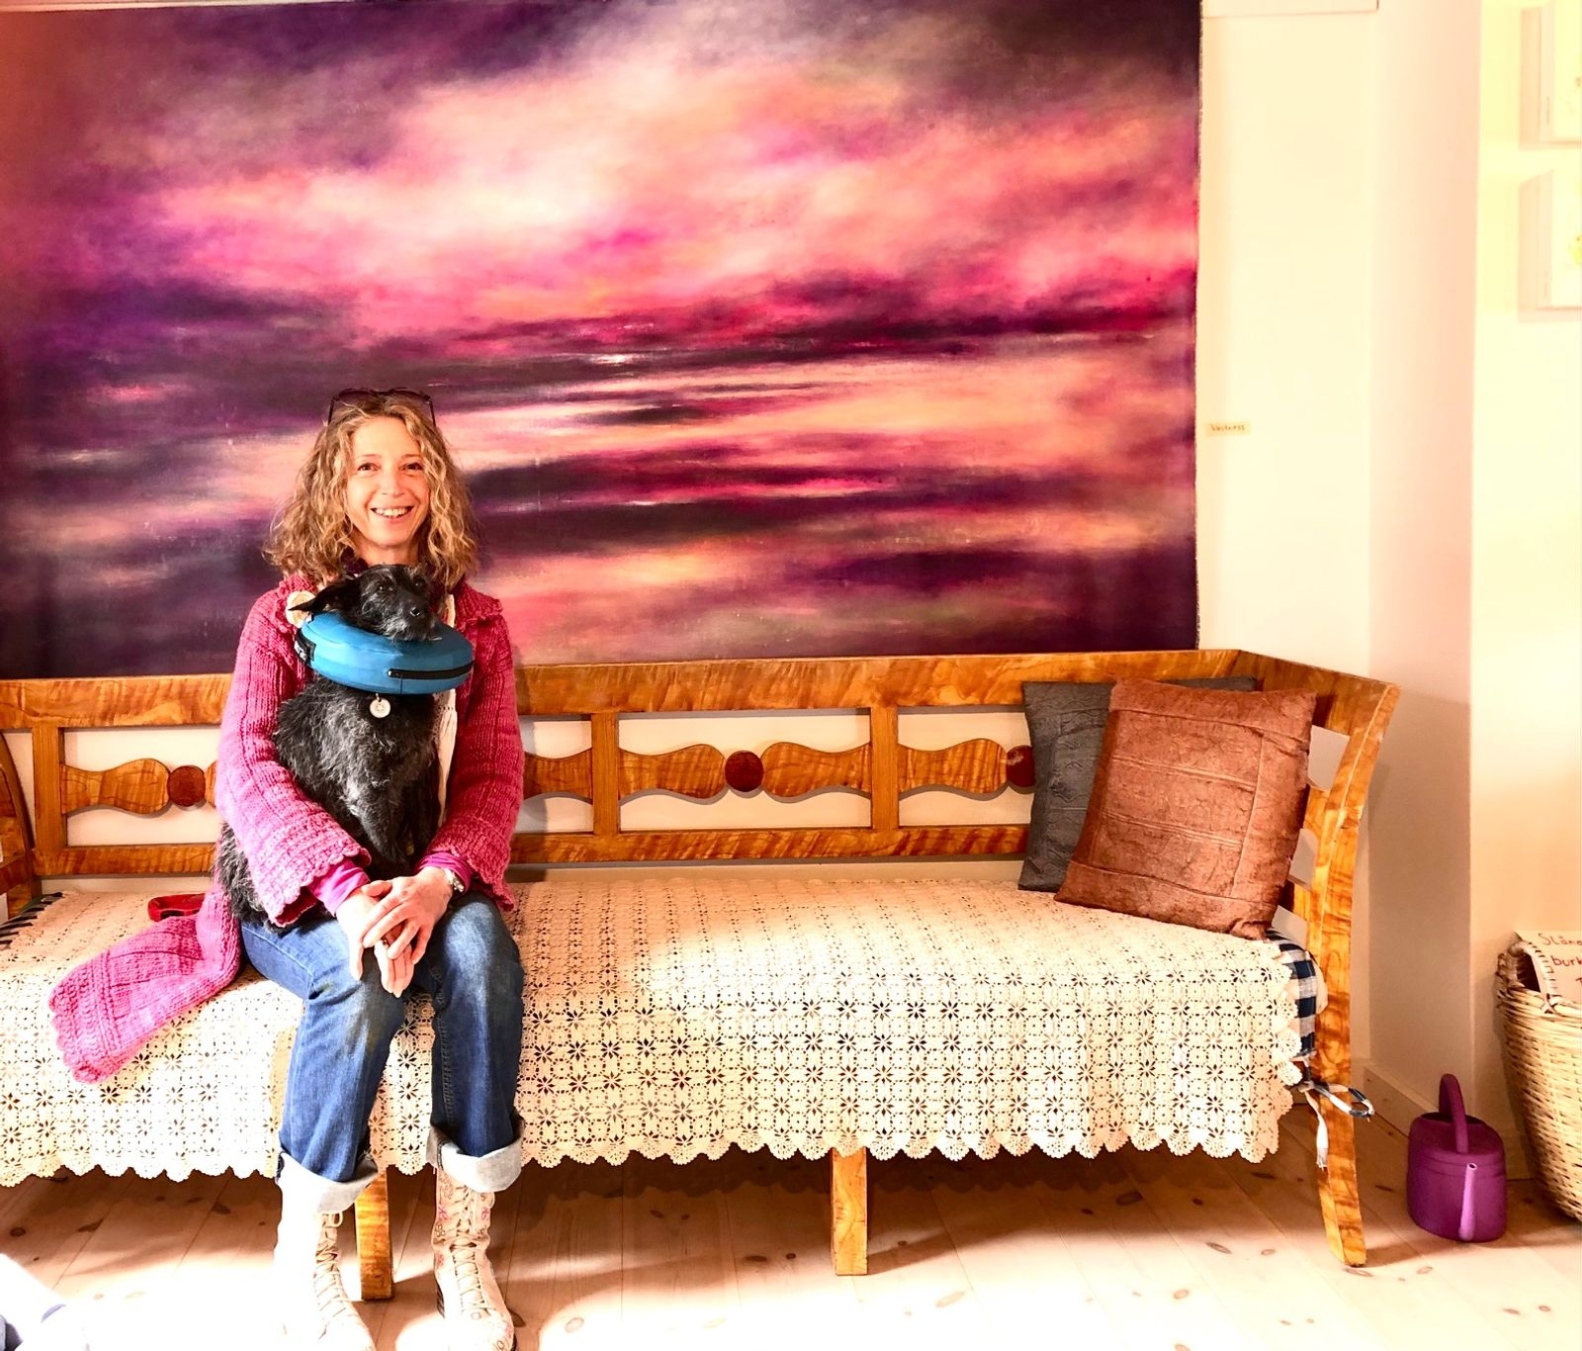 Konstnären Nina Jacucci sitter framför en av sina målningar med hunden Tassa i knät som är nyopererad, därav den blåa uppblåsta kragen.